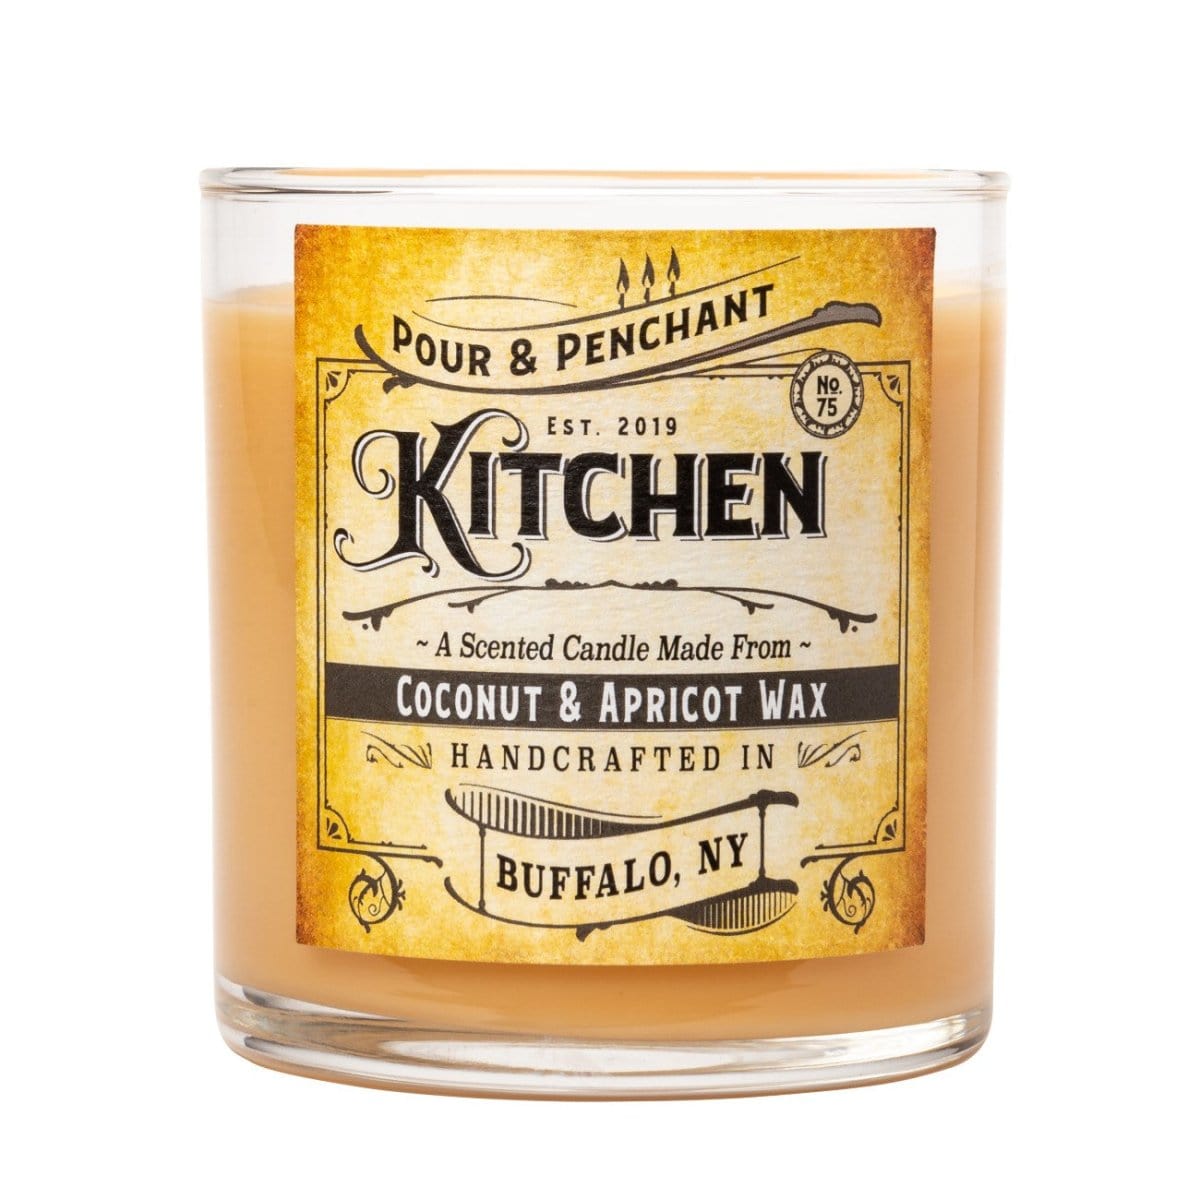 Pour & Penchant 10 oz Scented Candle - KITCHEN no.75 - Apple, Almond, Clove & Cinnamon